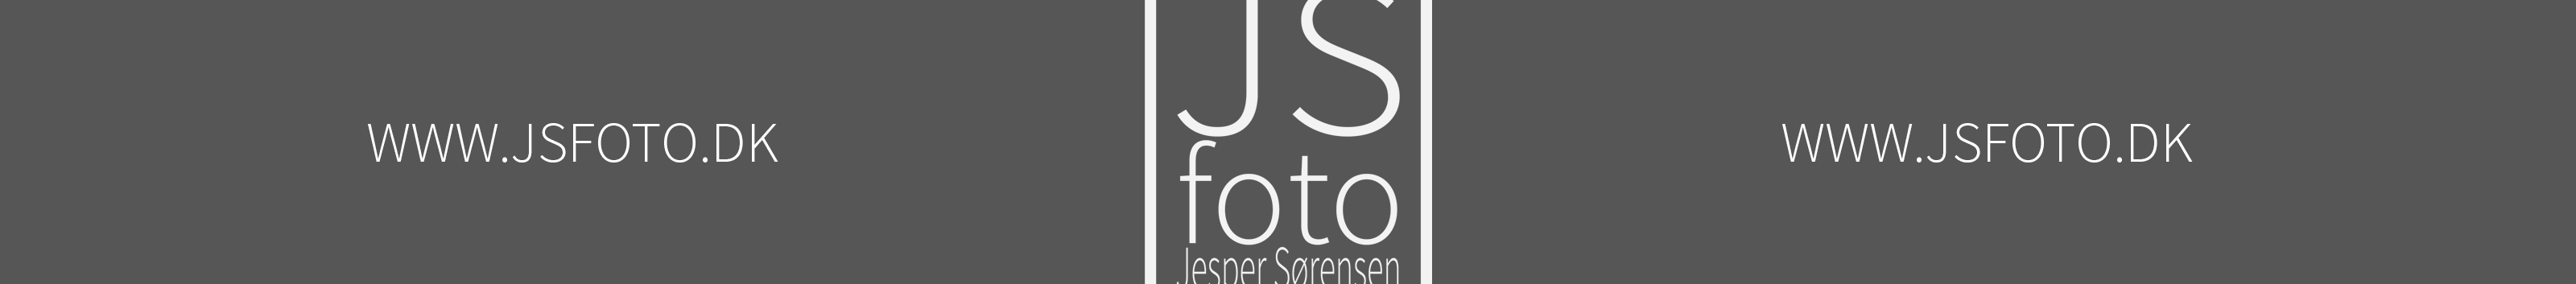 Jesper Sørensen's profile banner